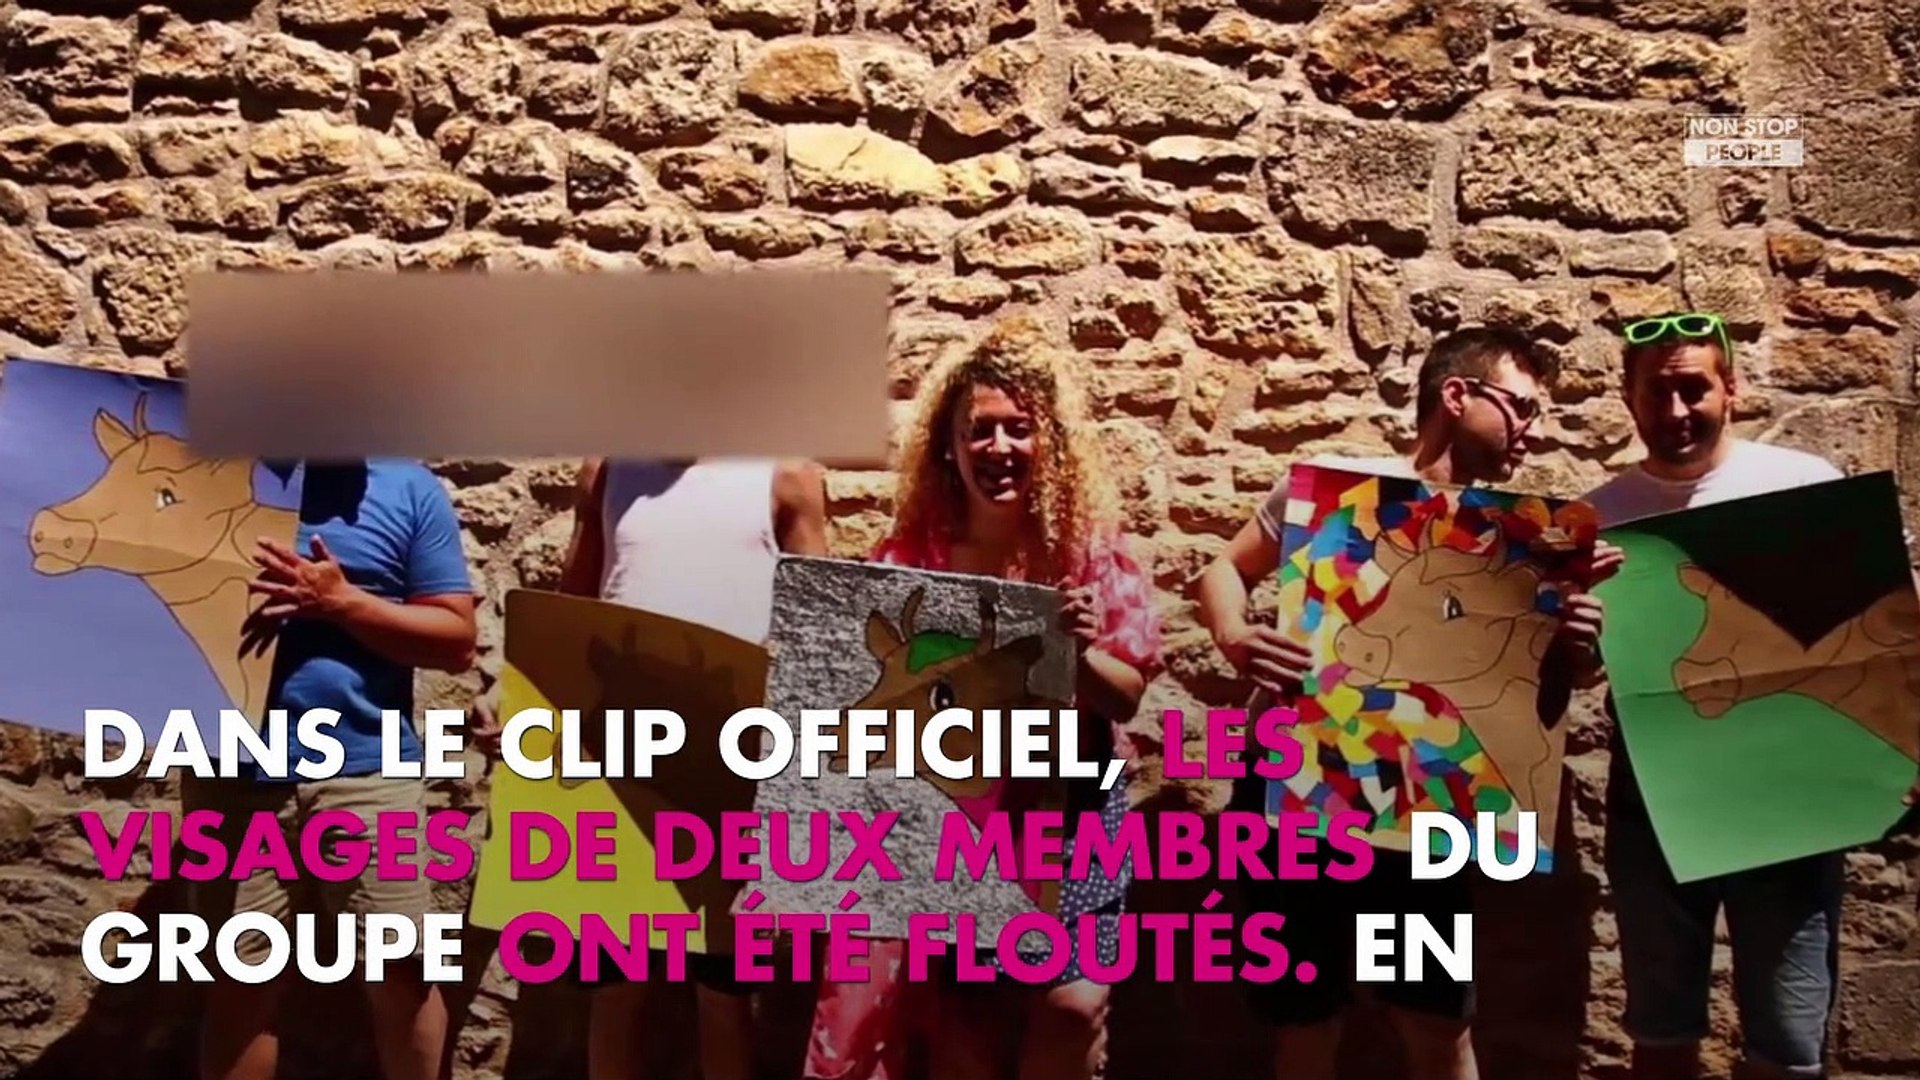 Trois Cafes Gourmands Le Groupe Contraint De Flouter Son Clip La Raison Devoilee Video Dailymotion